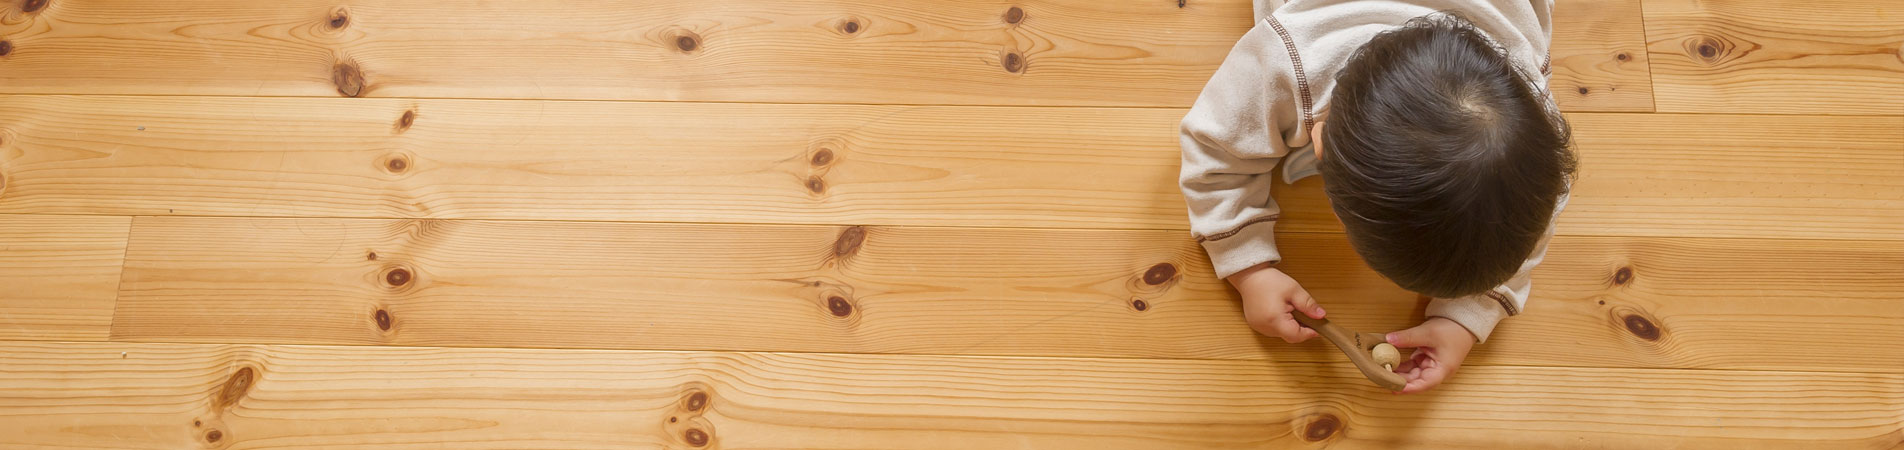 wood-flooring.jpg